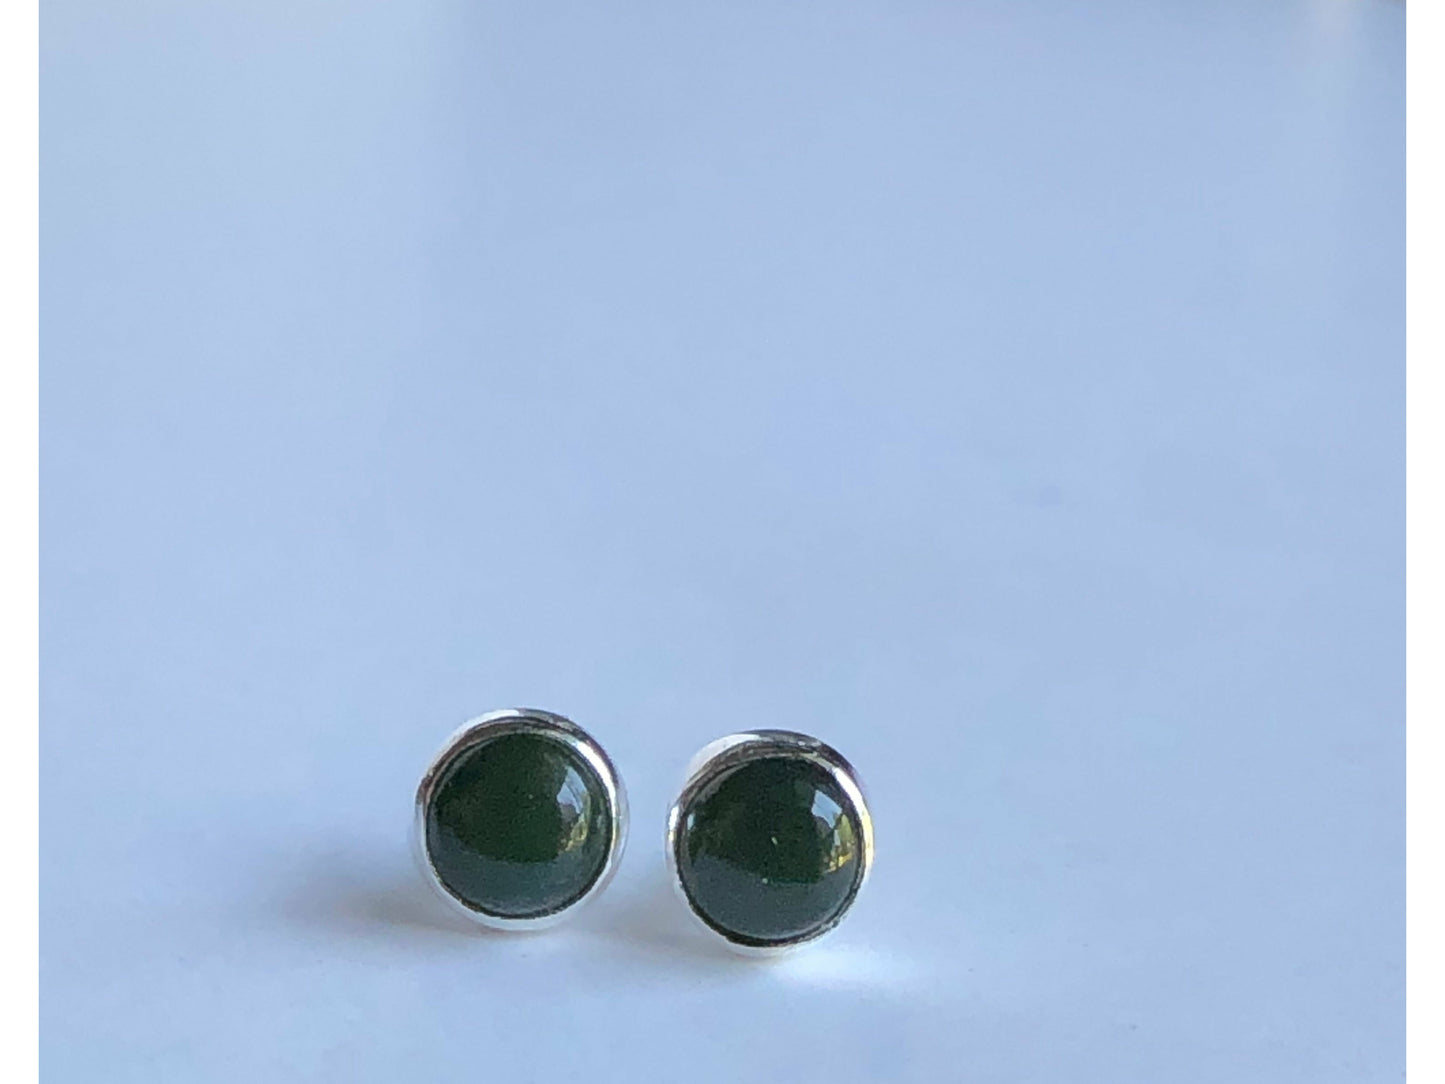 sterling-silver-jade-earrings-jade-studs-jade-earrings-dainty-earrings-minimalist-jewelry-simple-earrings-green-earrings-gemstone-earrings